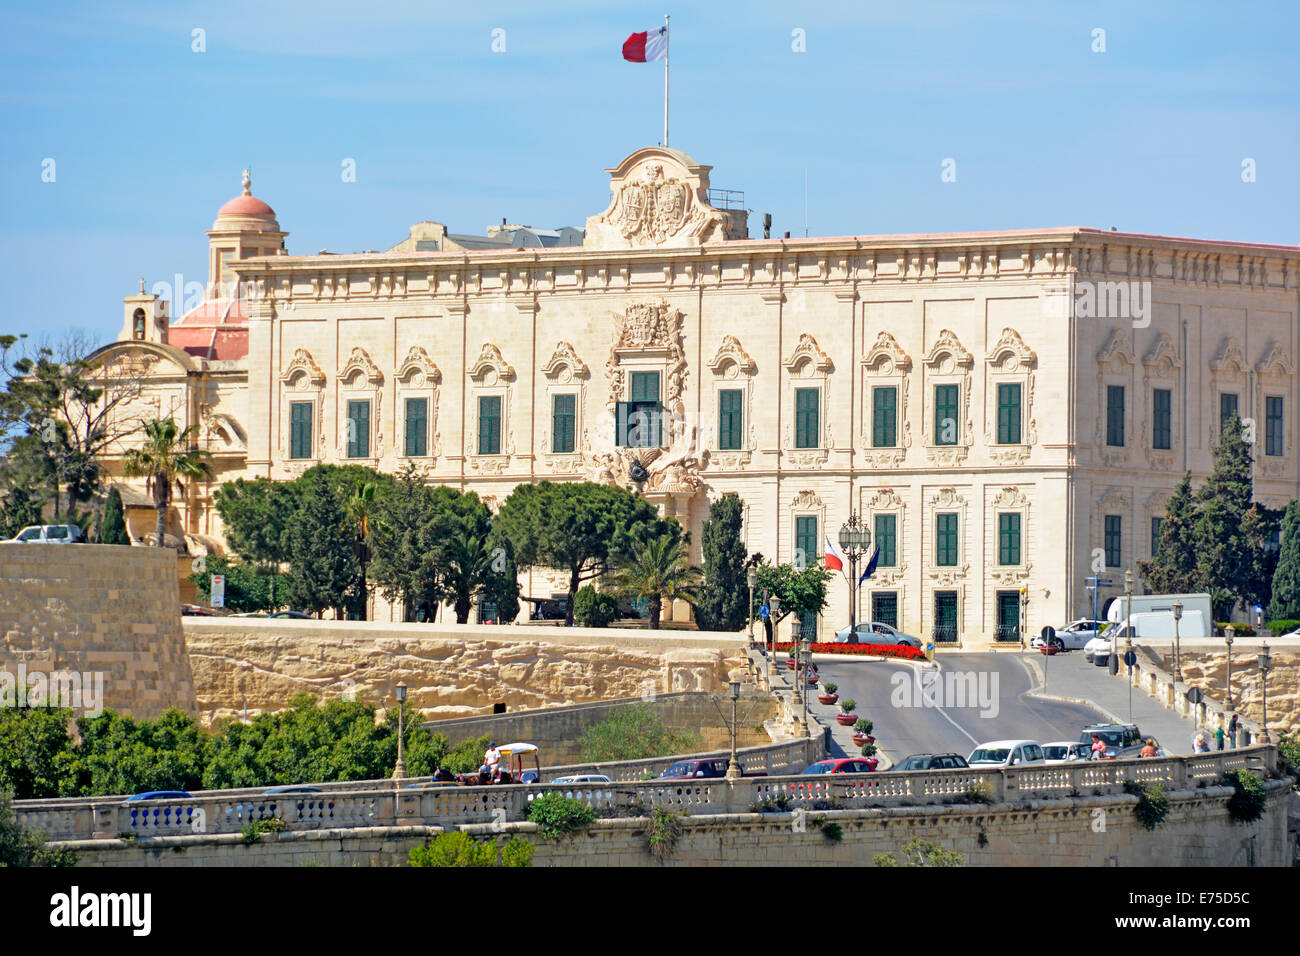 Drapeau maltais sur la façade baroque de l'Auberge de Castille un bâtiment gouvernemental situé sur la place Castille la Valette abrite le bureau du Premier ministre de Malte eu Banque D'Images